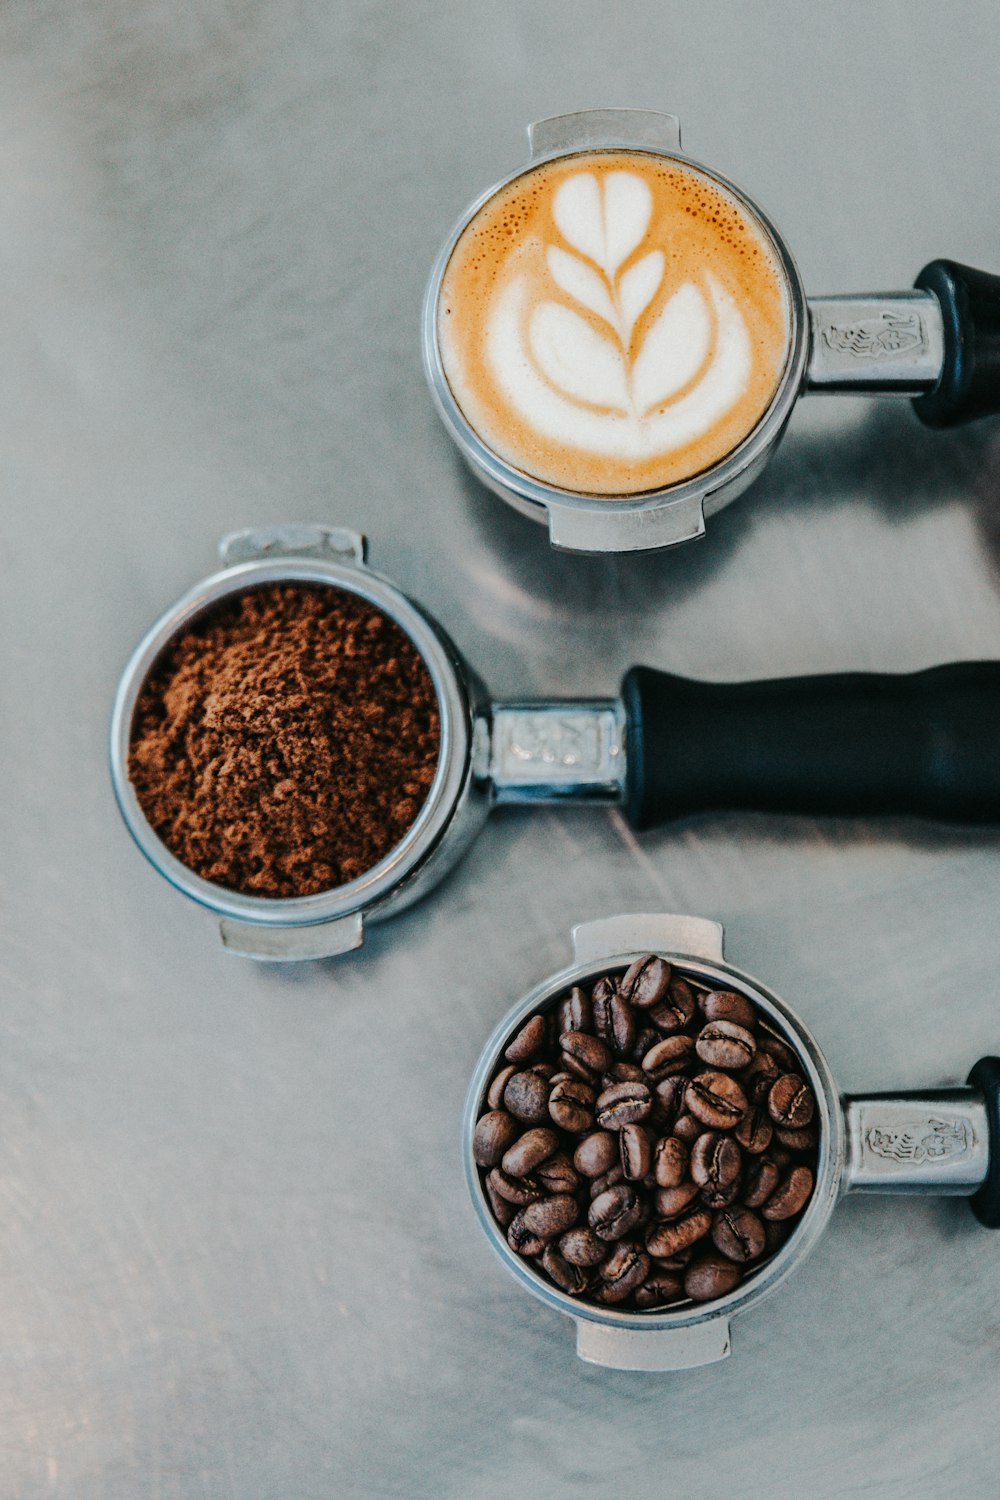 Fotografía plana de café con leche, café molido y granos de café